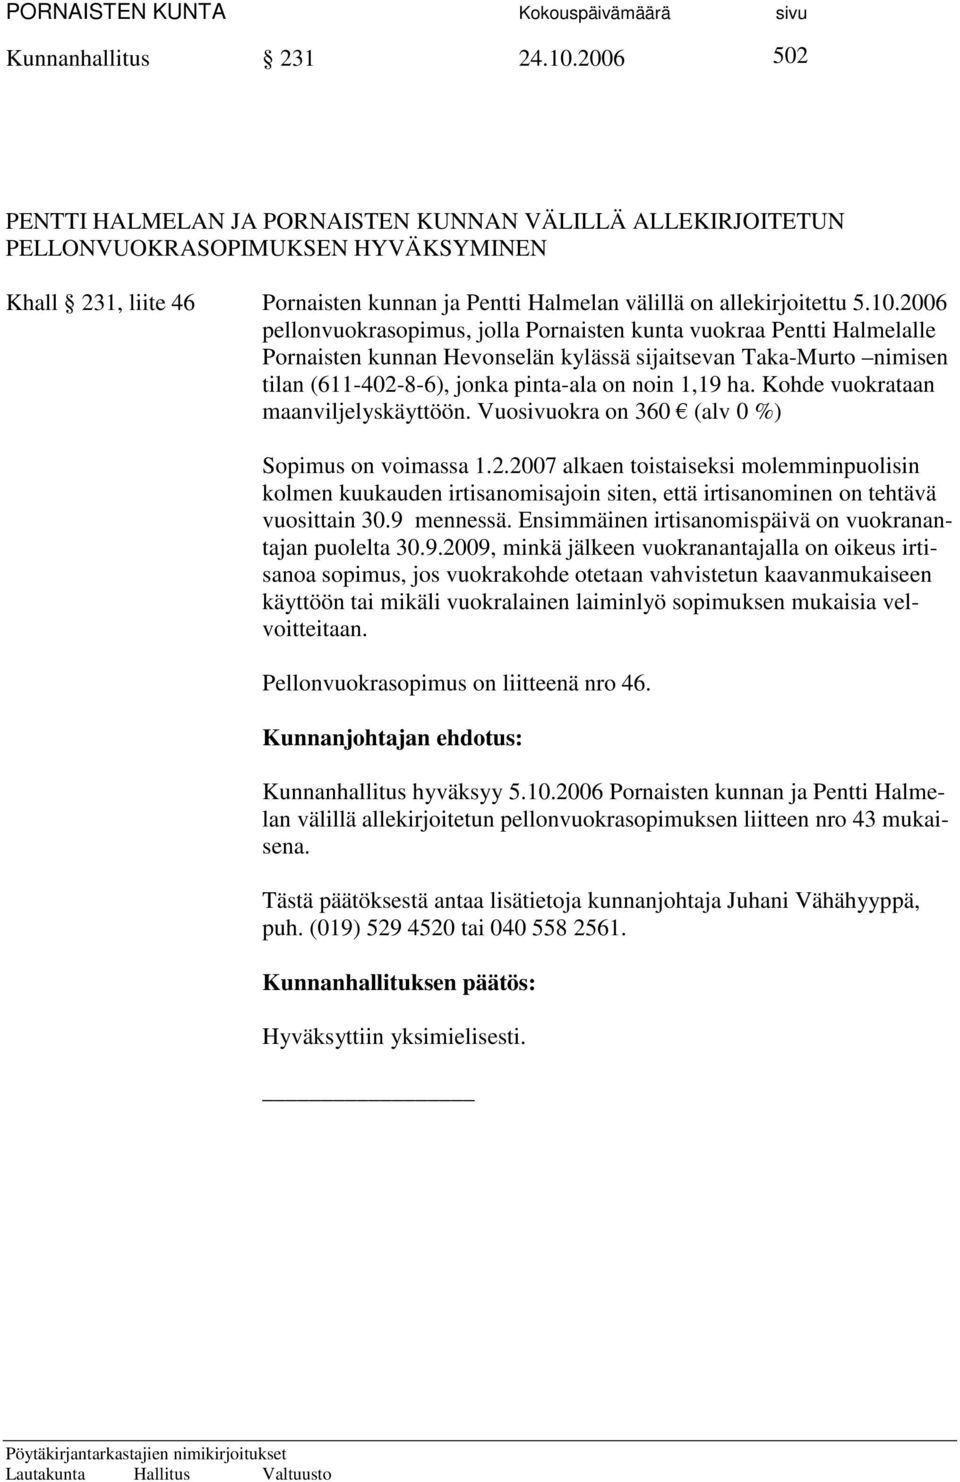 2006 pellonvuokrasopimus, jolla Pornaisten kunta vuokraa Pentti Halmelalle Pornaisten kunnan Hevonselän kylässä sijaitsevan Taka-Murto nimisen tilan (611-402-8-6), jonka pinta-ala on noin 1,19 ha.